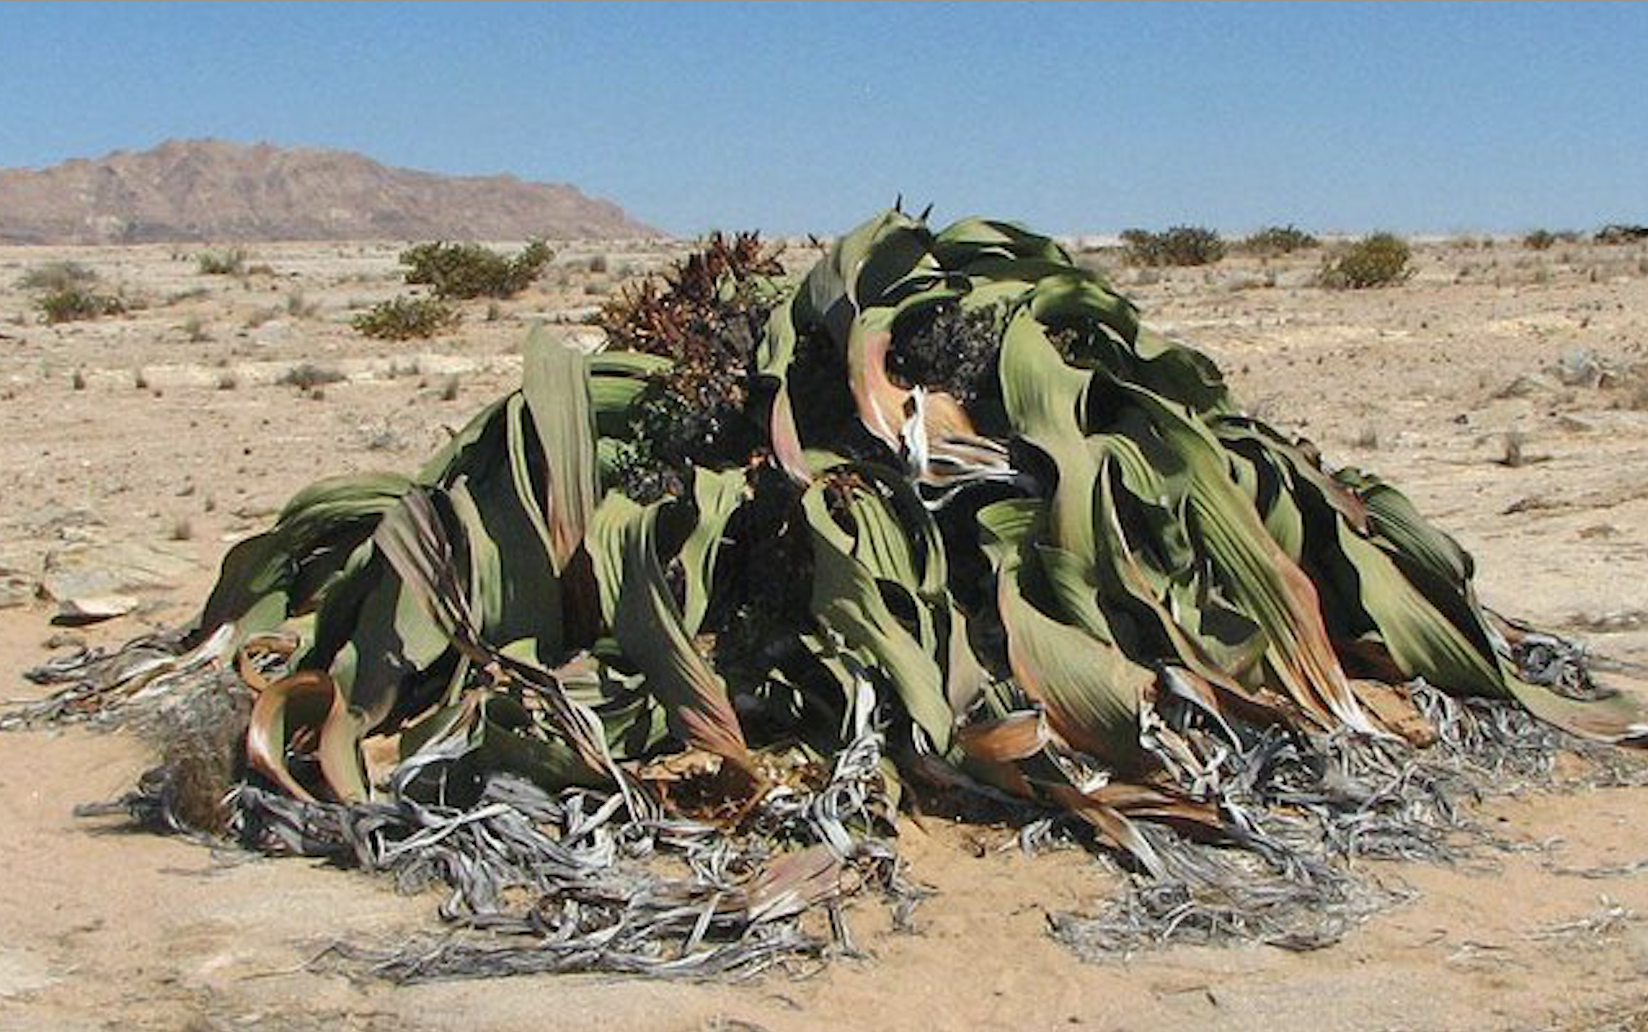 An enormous Welwitschia mirabilis